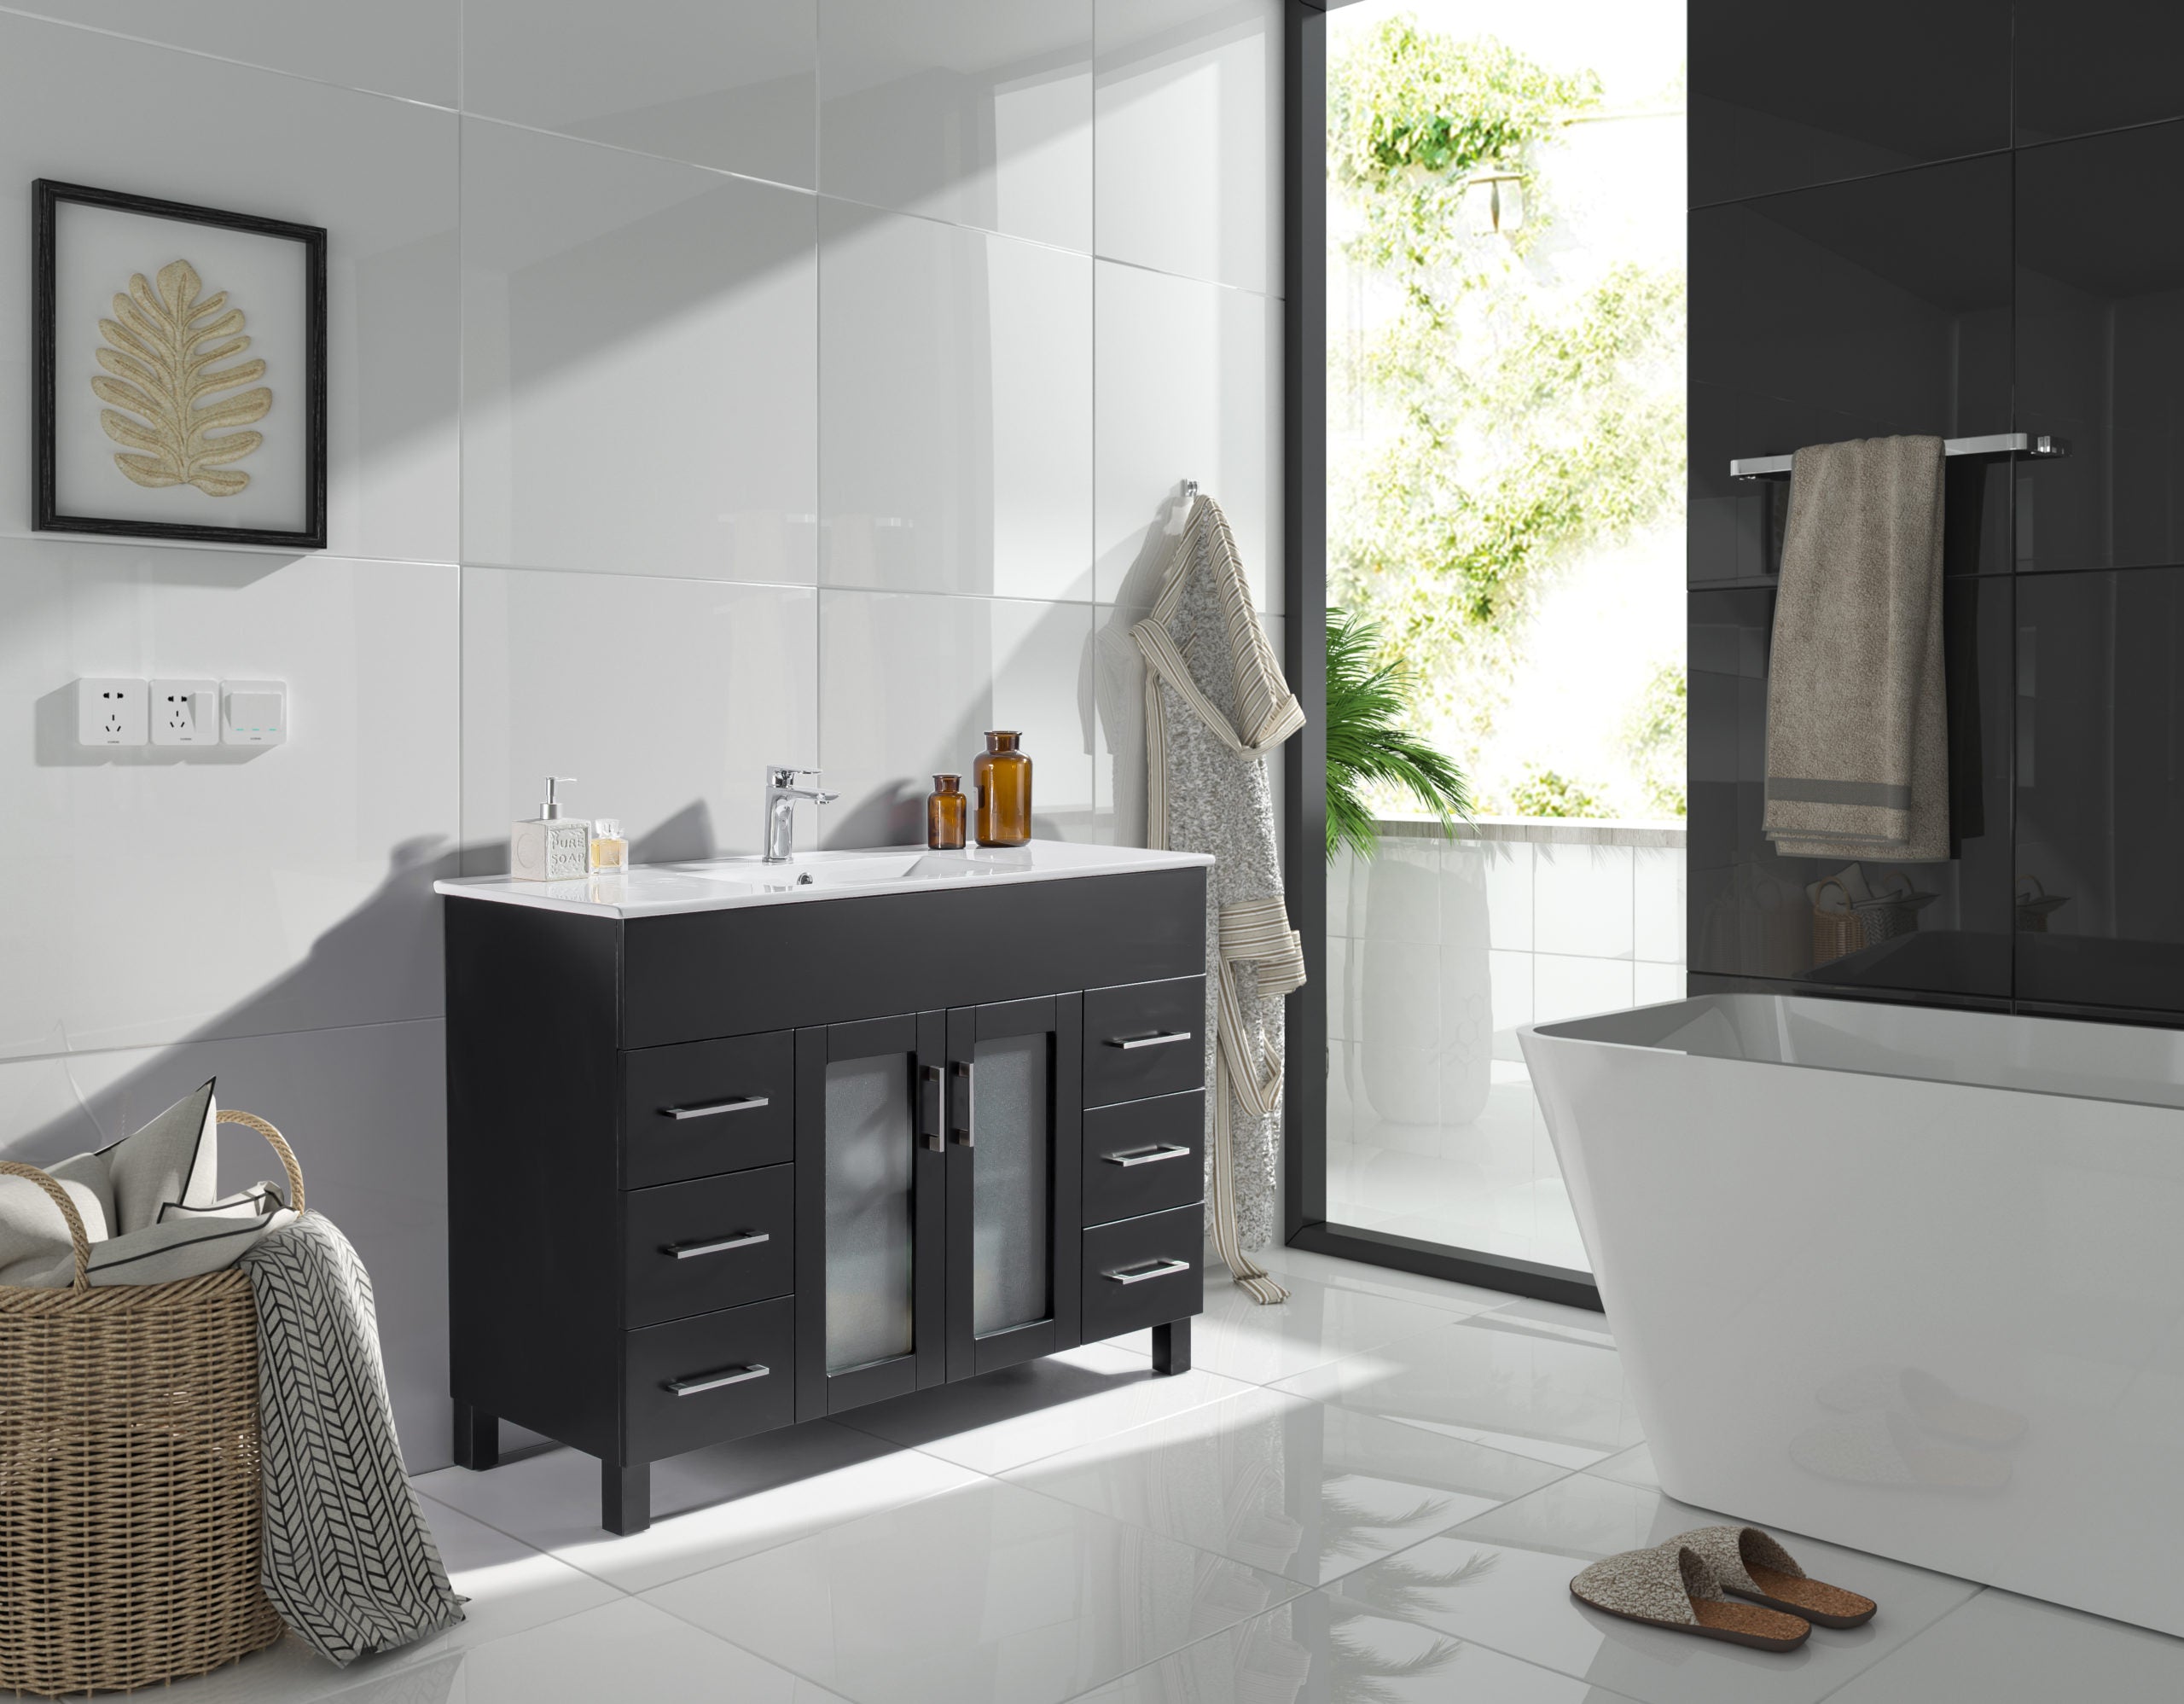 Laviva Nova 48" Espresso Bathroom Vanity with White Ceramic Basin Countertop | 31321529-48E-CB